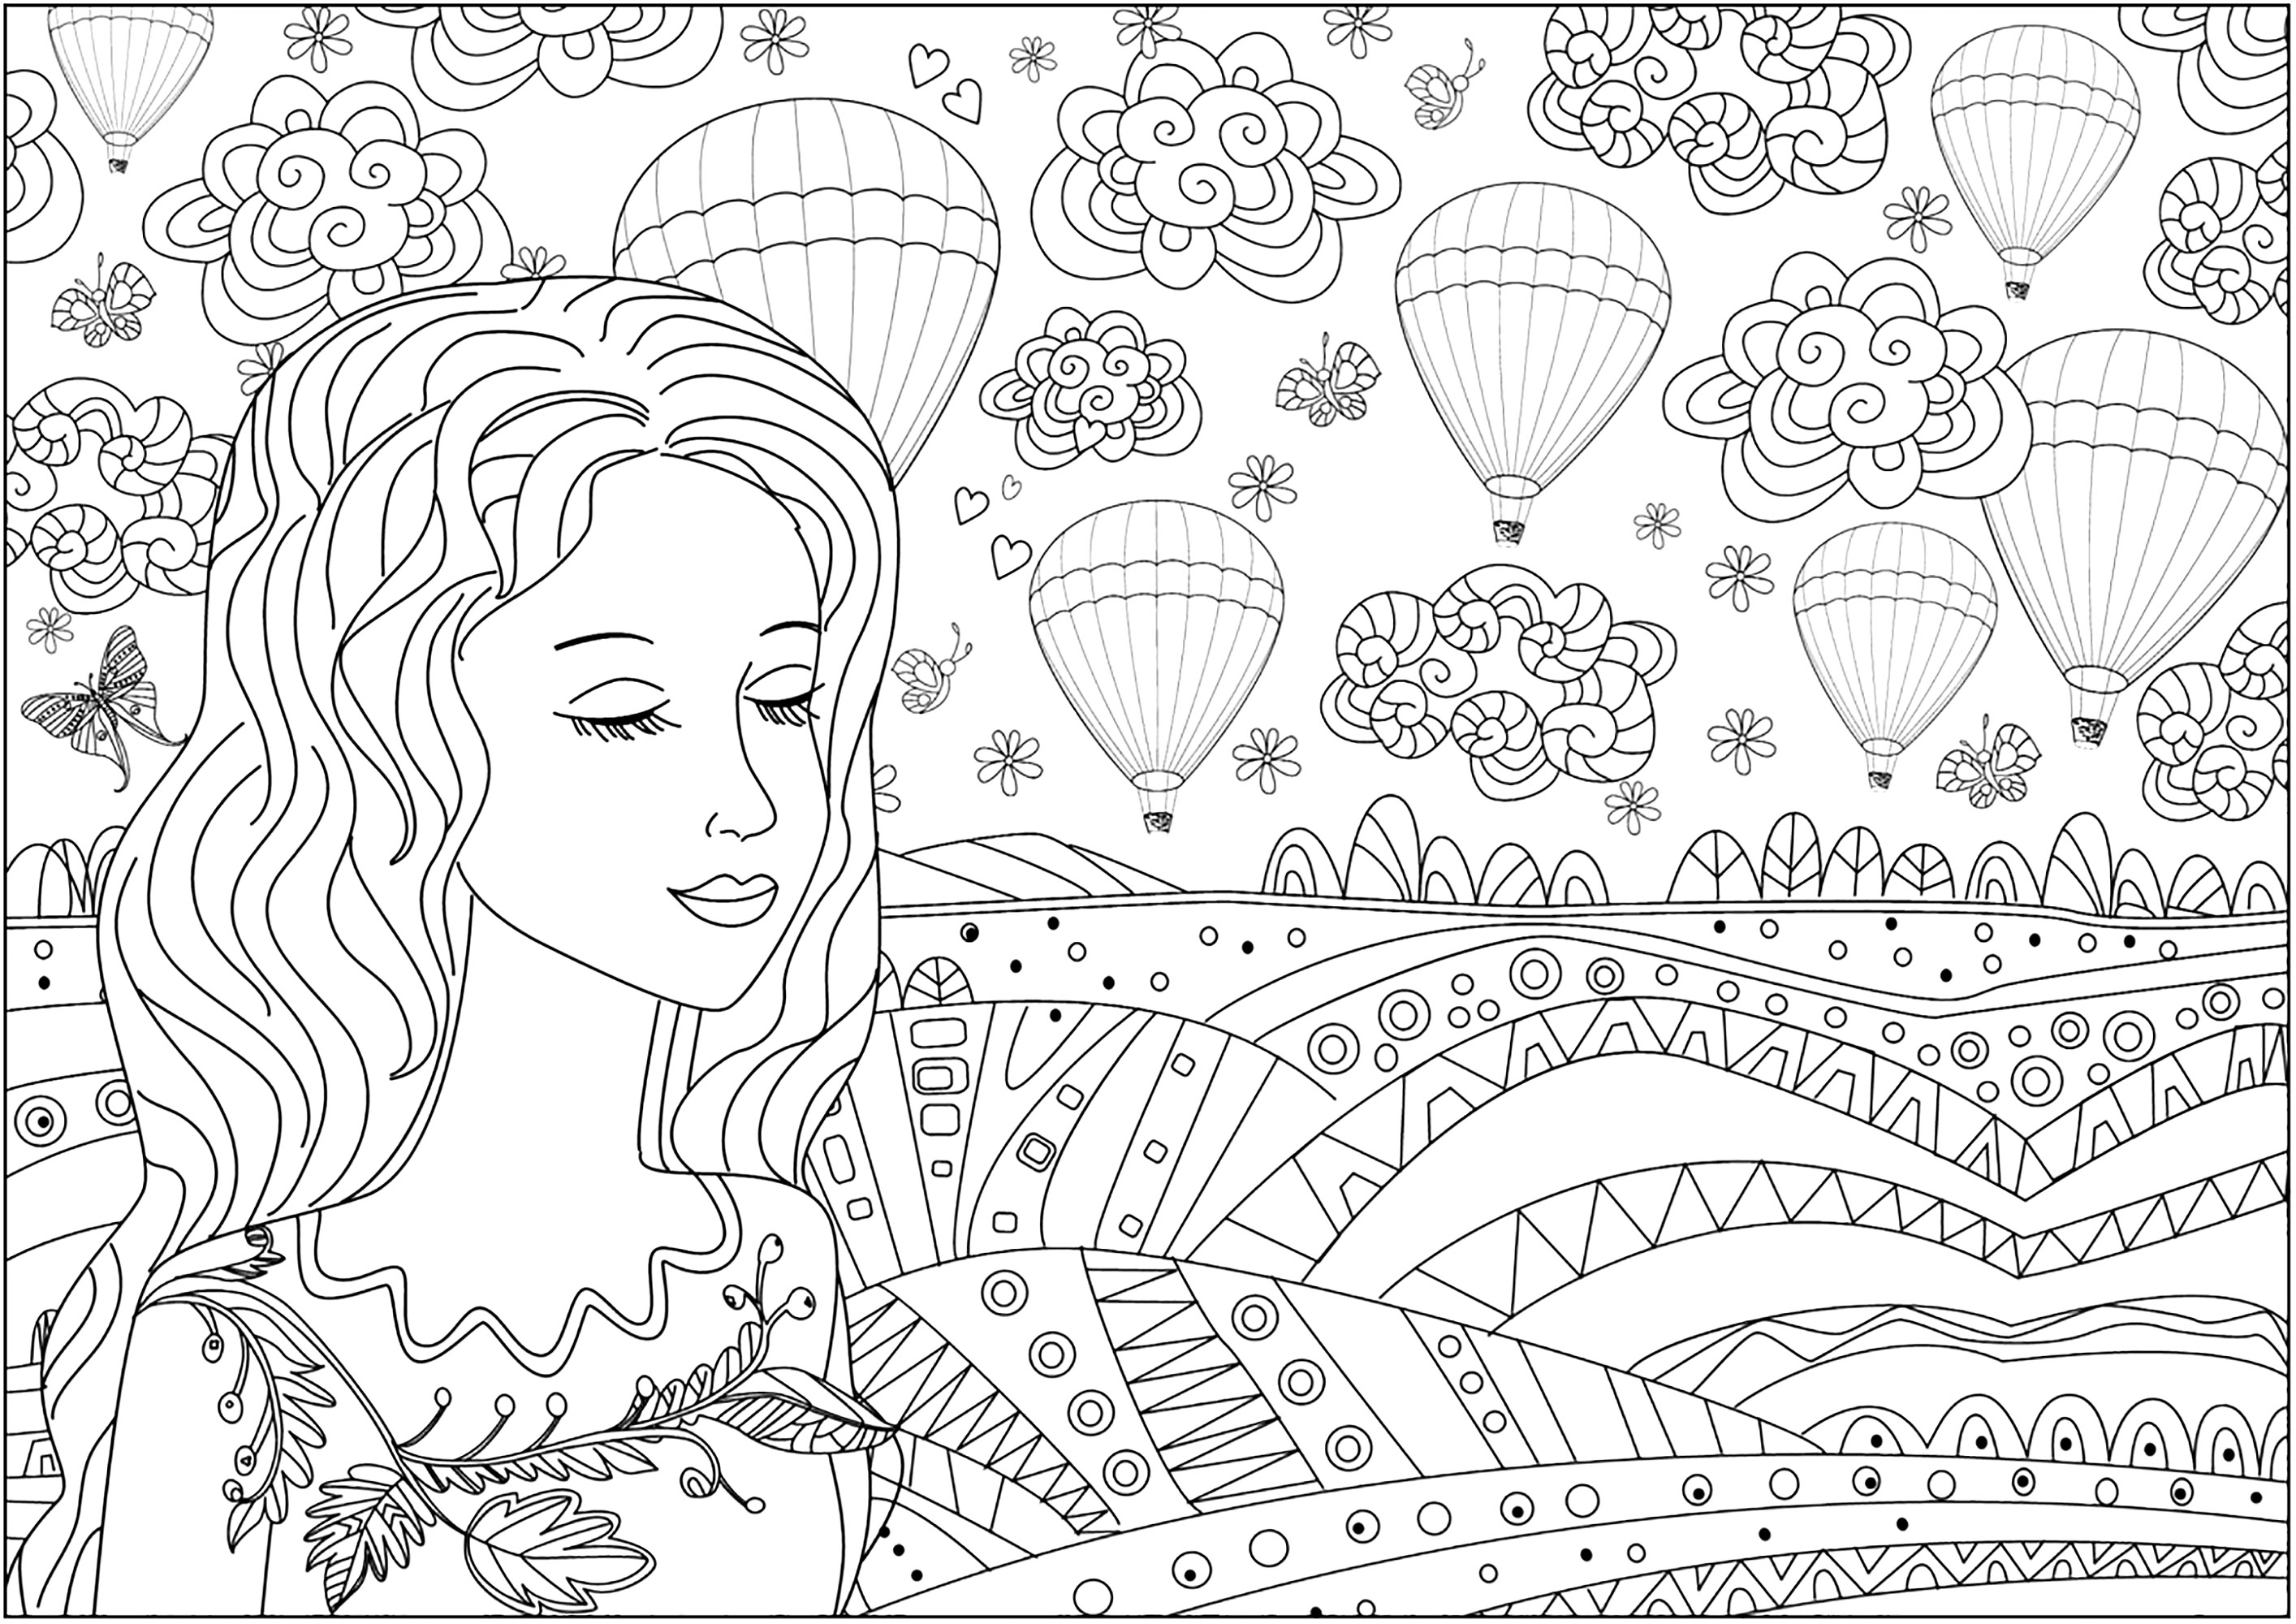 Femme songeuse devant une plaine et des montgolfières dans le ciel. De nombreux détails à mettre en couleur dans ce joli coloriage très original, Source : 123rf   Artiste : Ksym